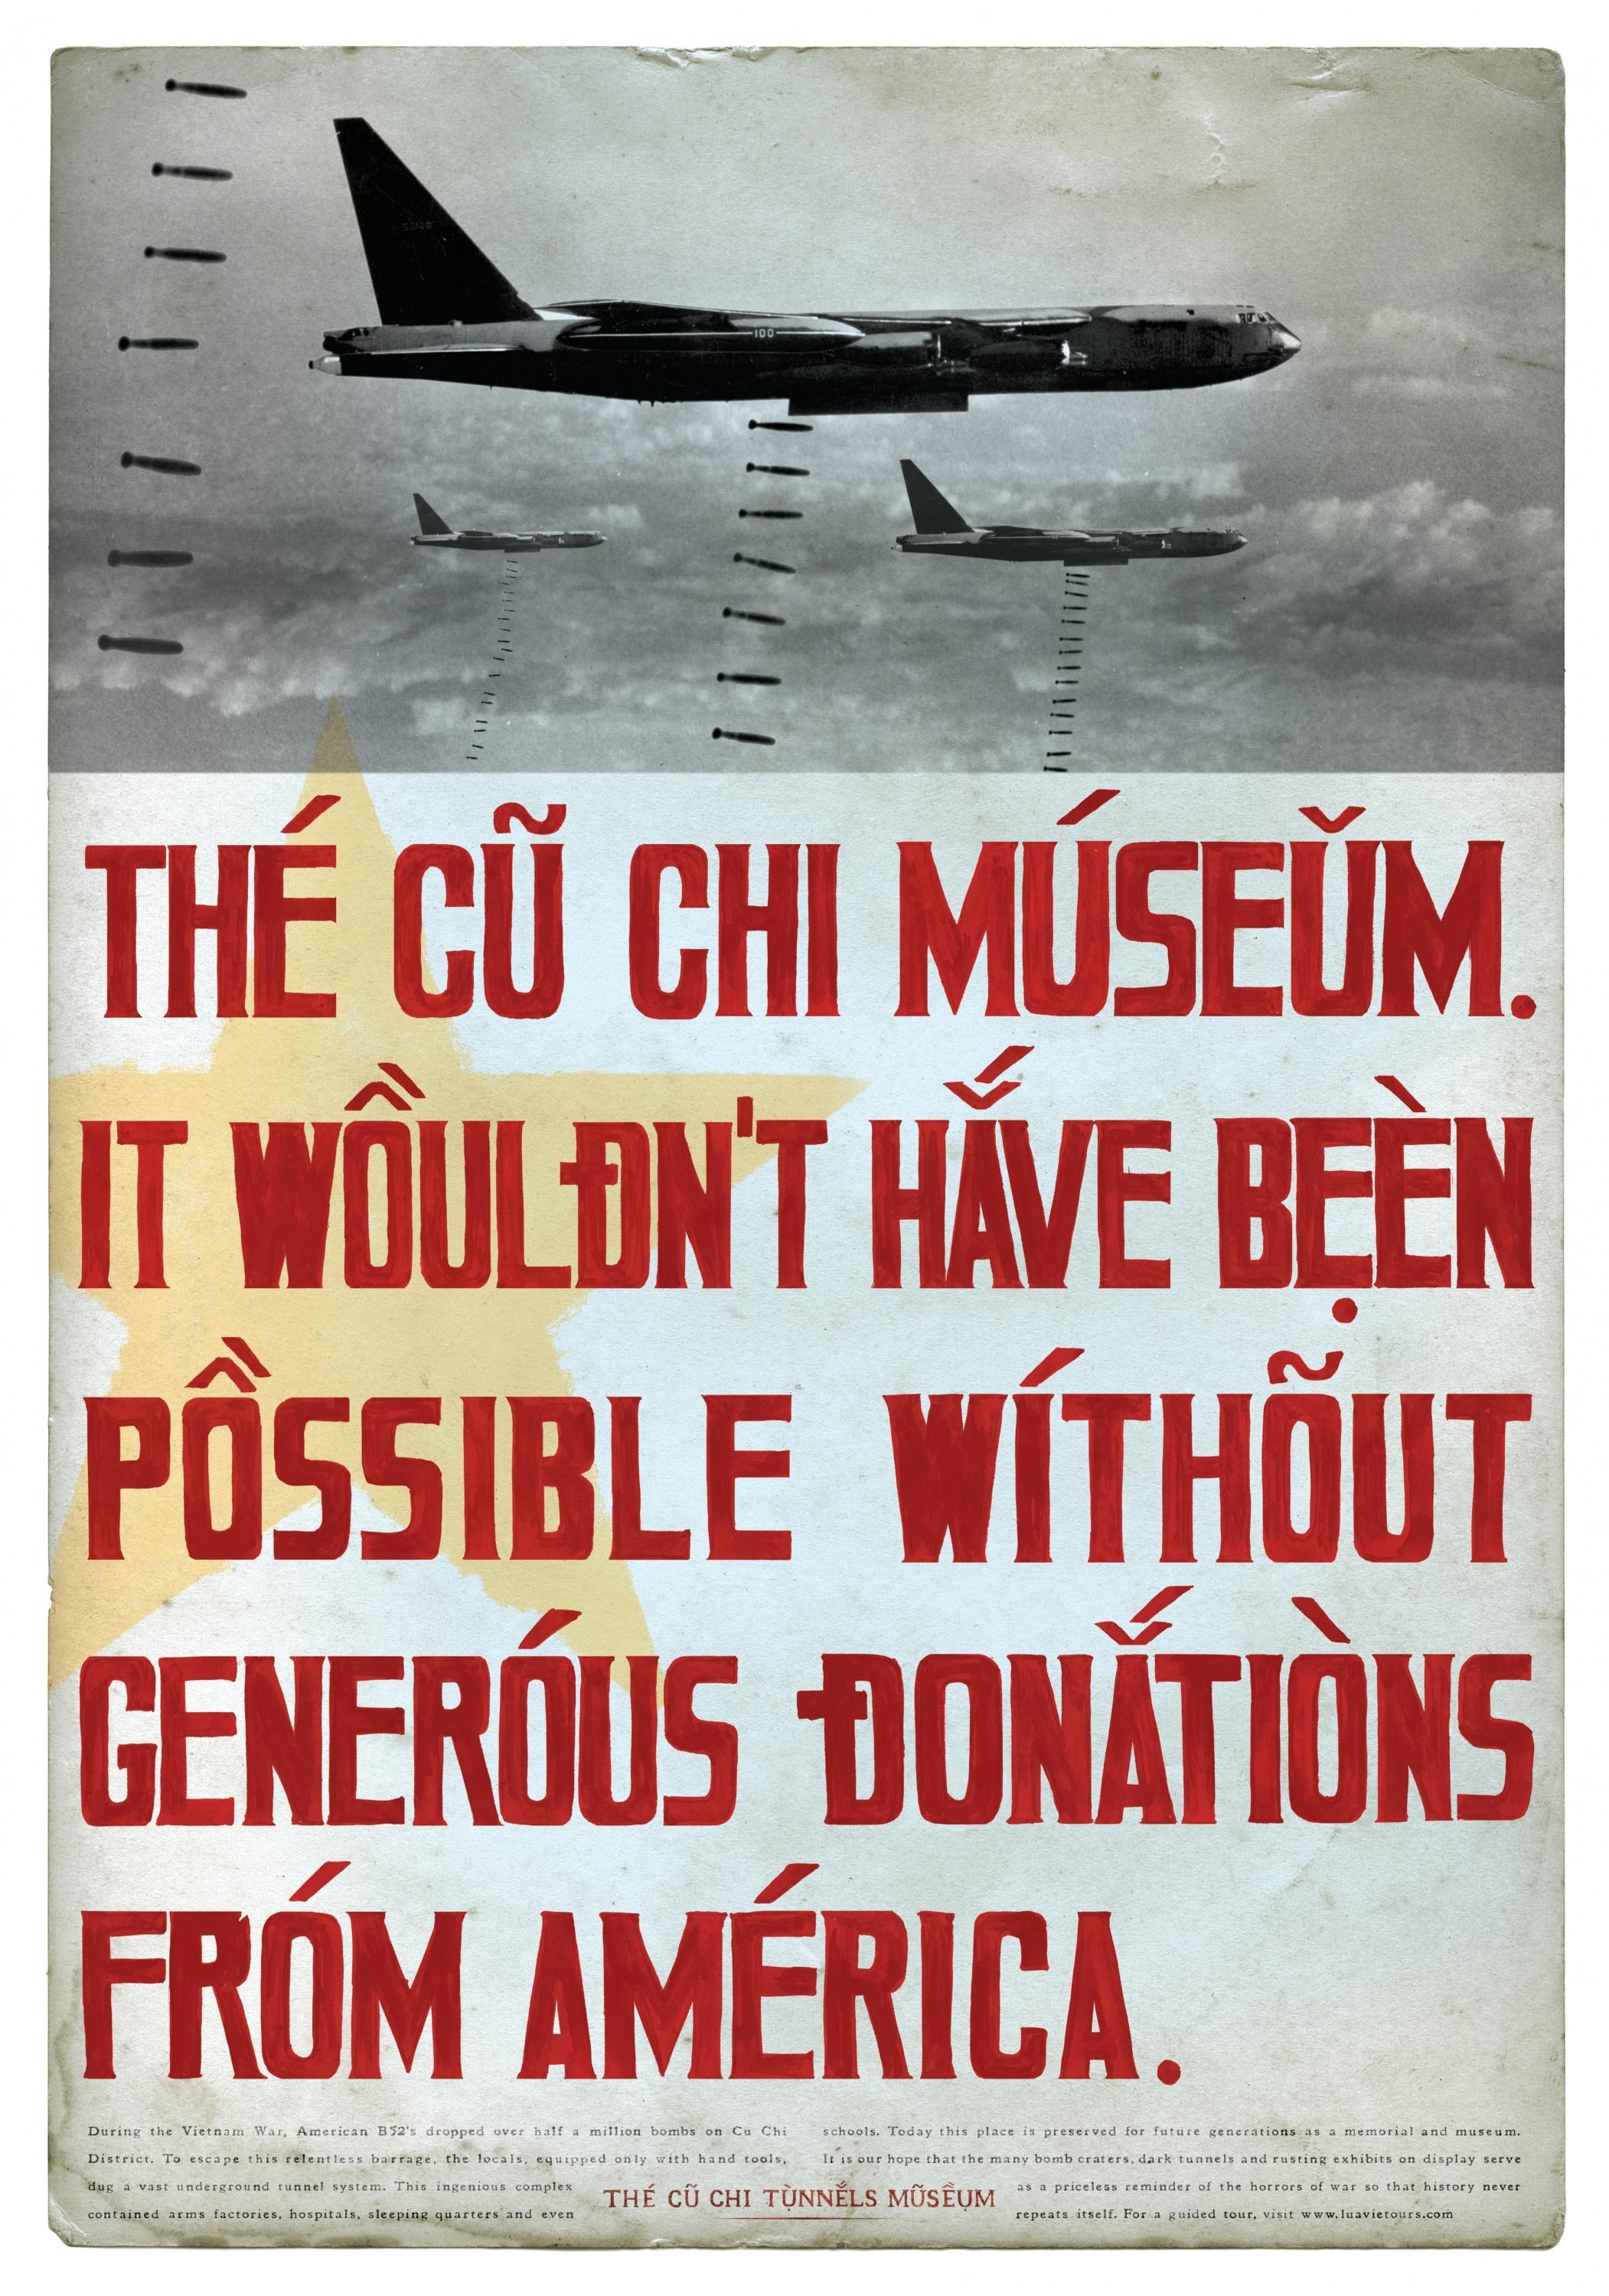 CU CHI TUNNELS MUSEUM